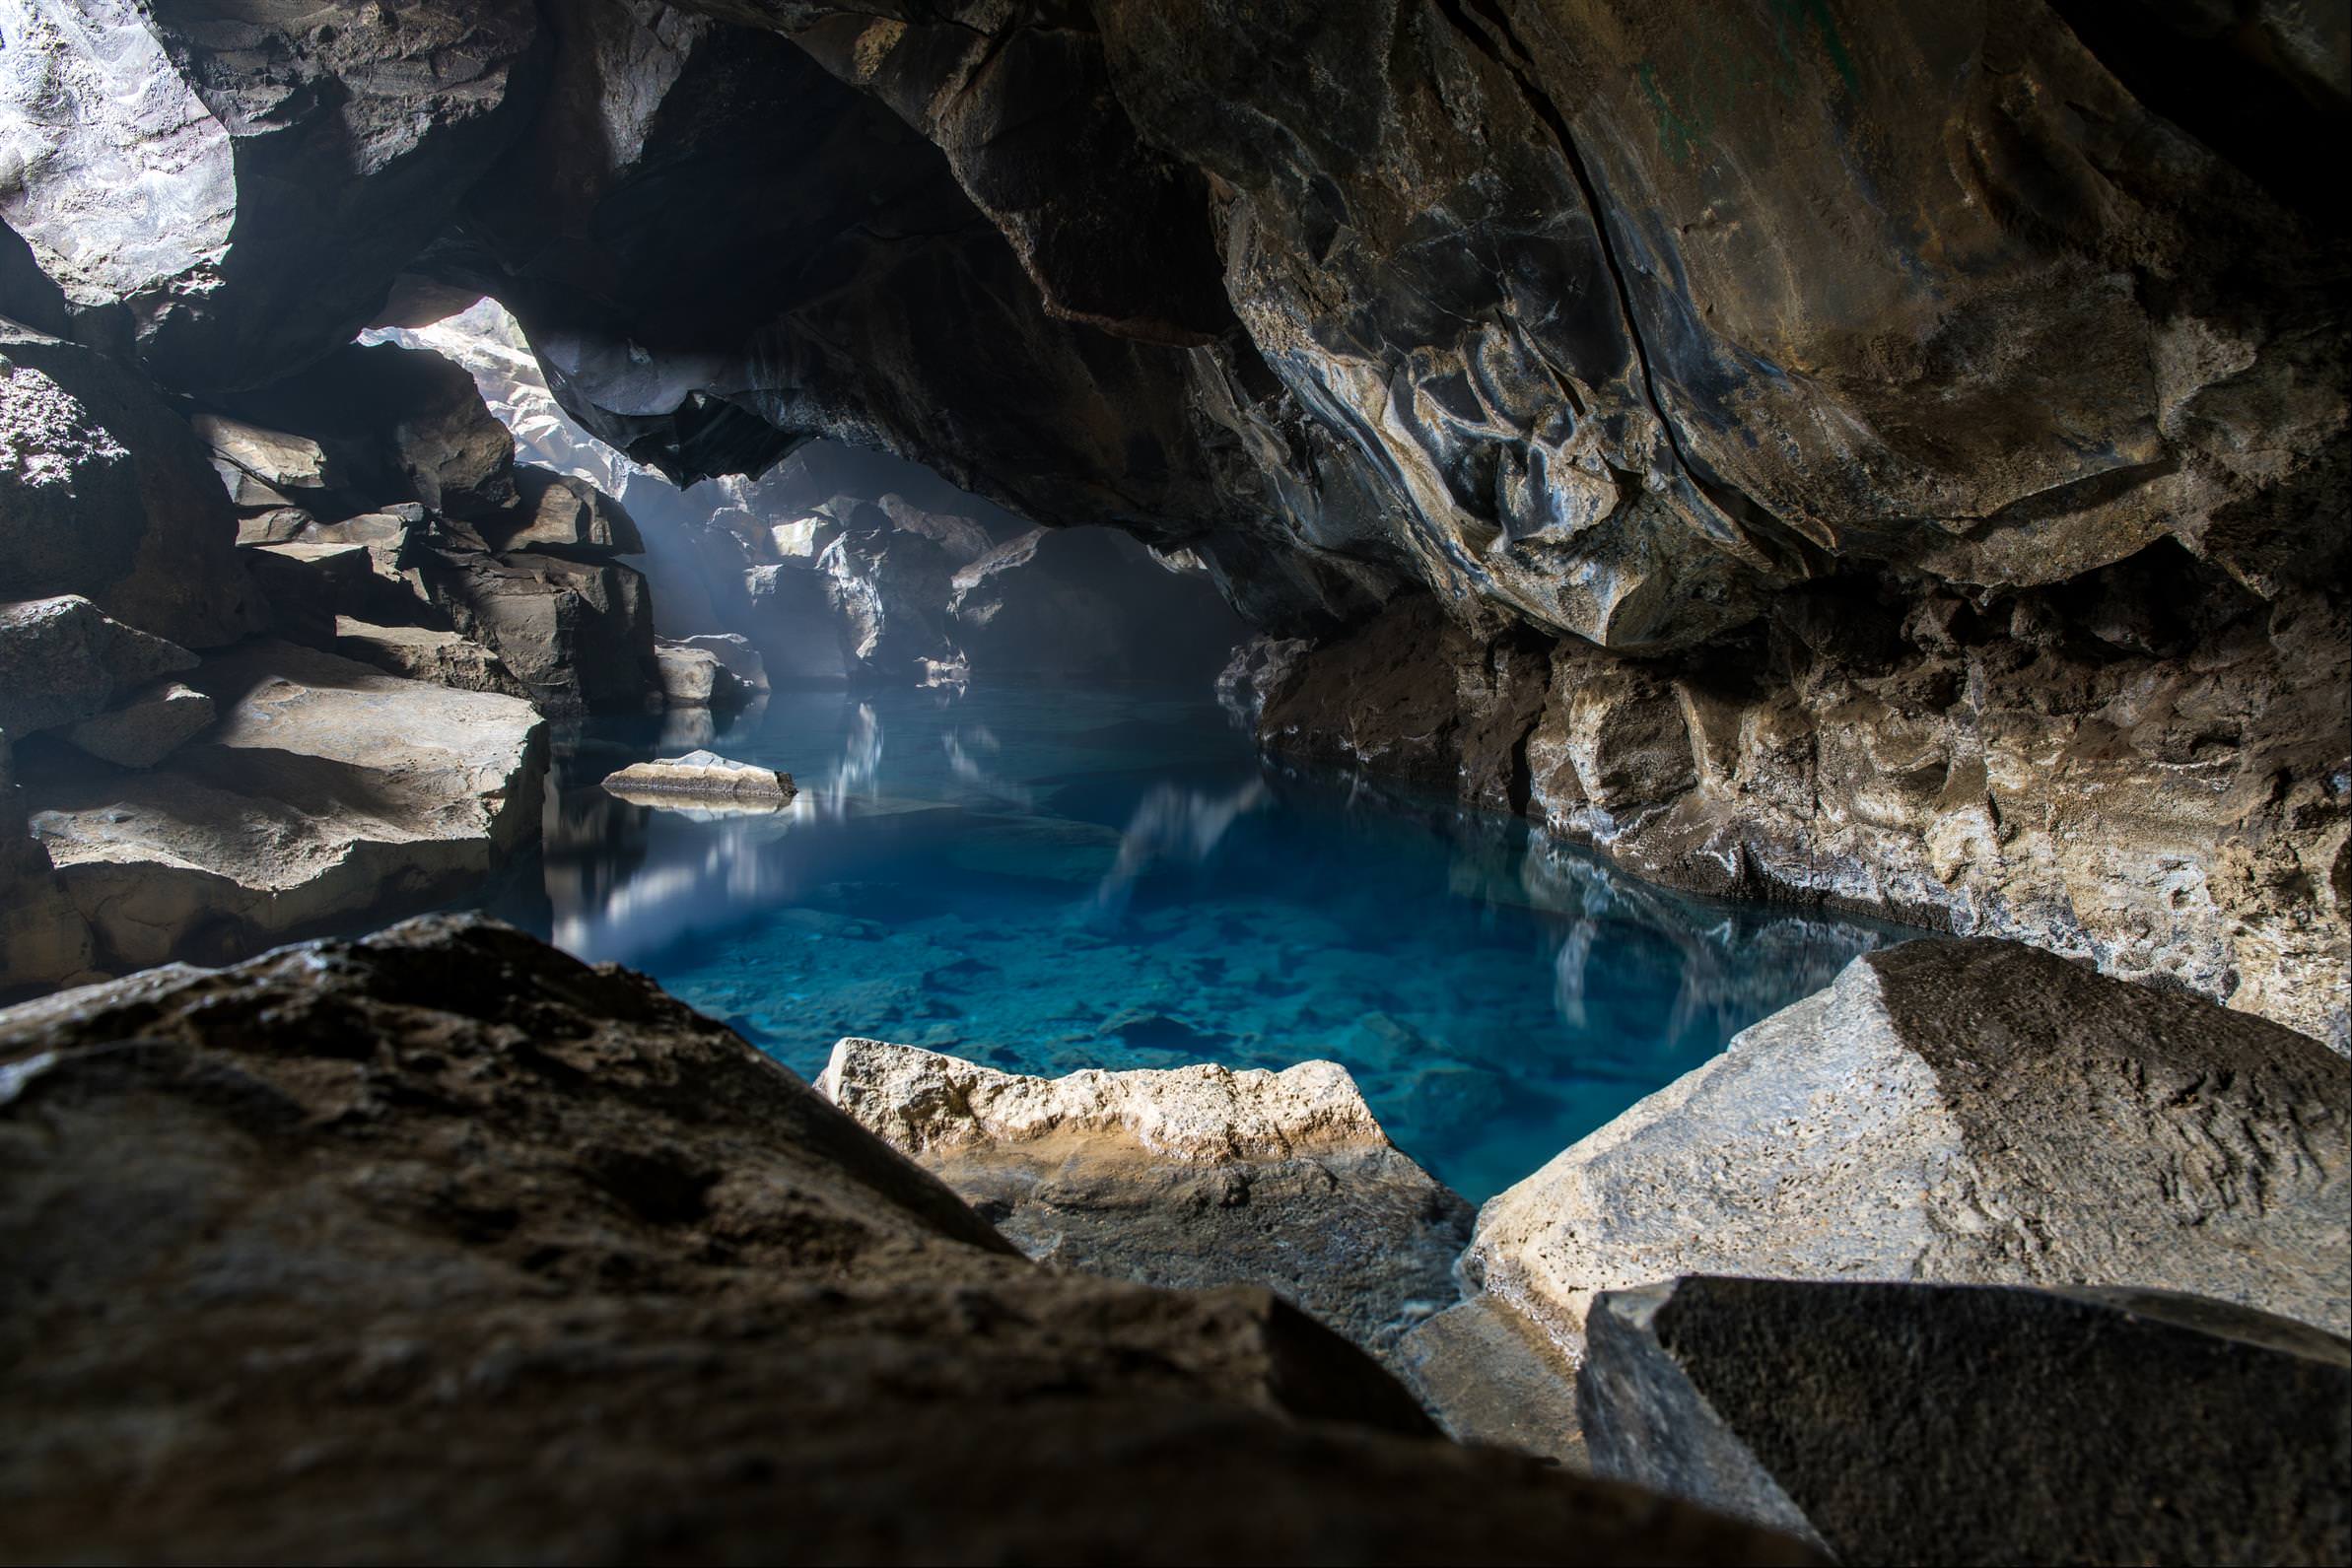 地洞溫泉 Grjotagja cave